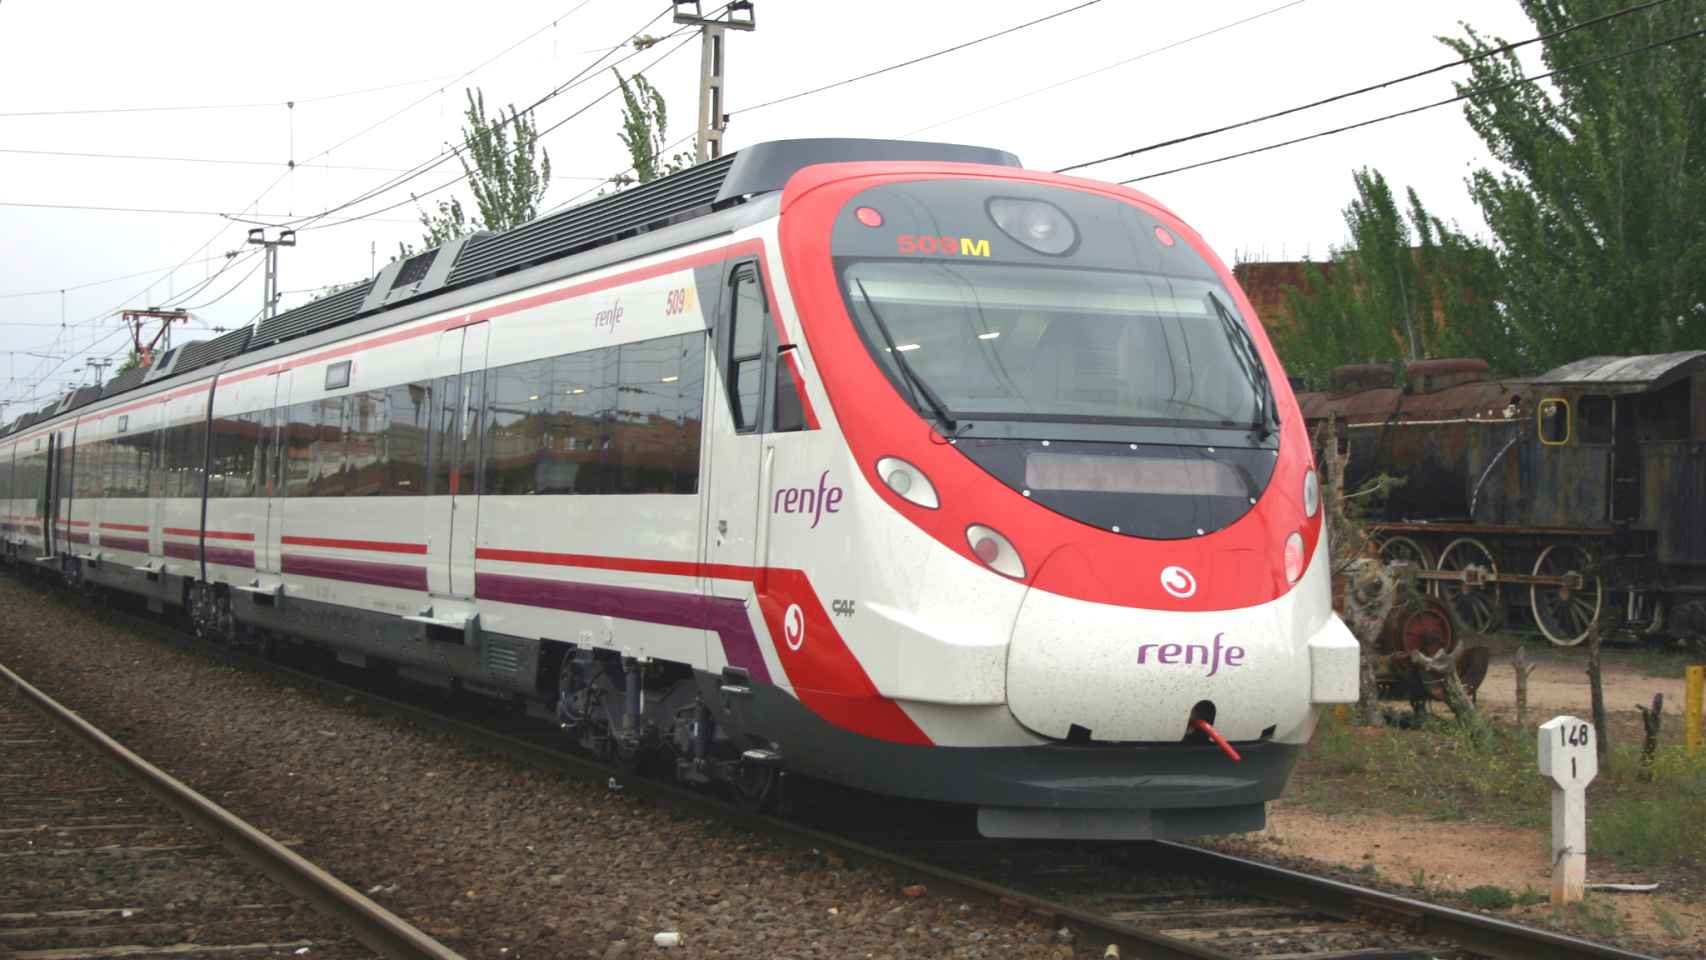 Un tren Civia, modelo que se usará en el proyecto.